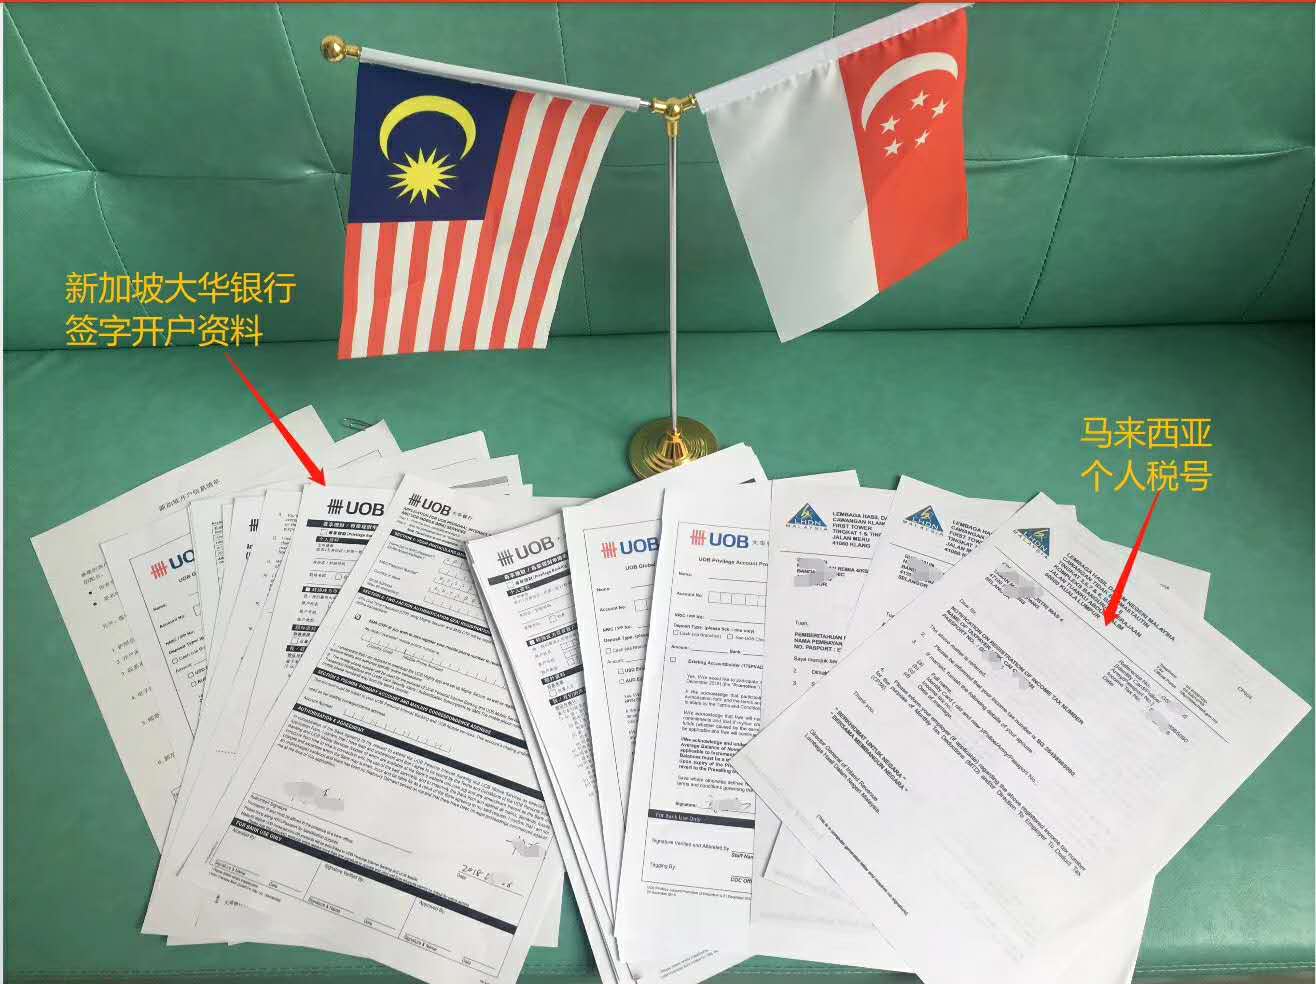 程同学获得马来西亚学生签证-学邦留学网-学邦教育咨询有限公司|马鞍山出国留学就找学邦留学